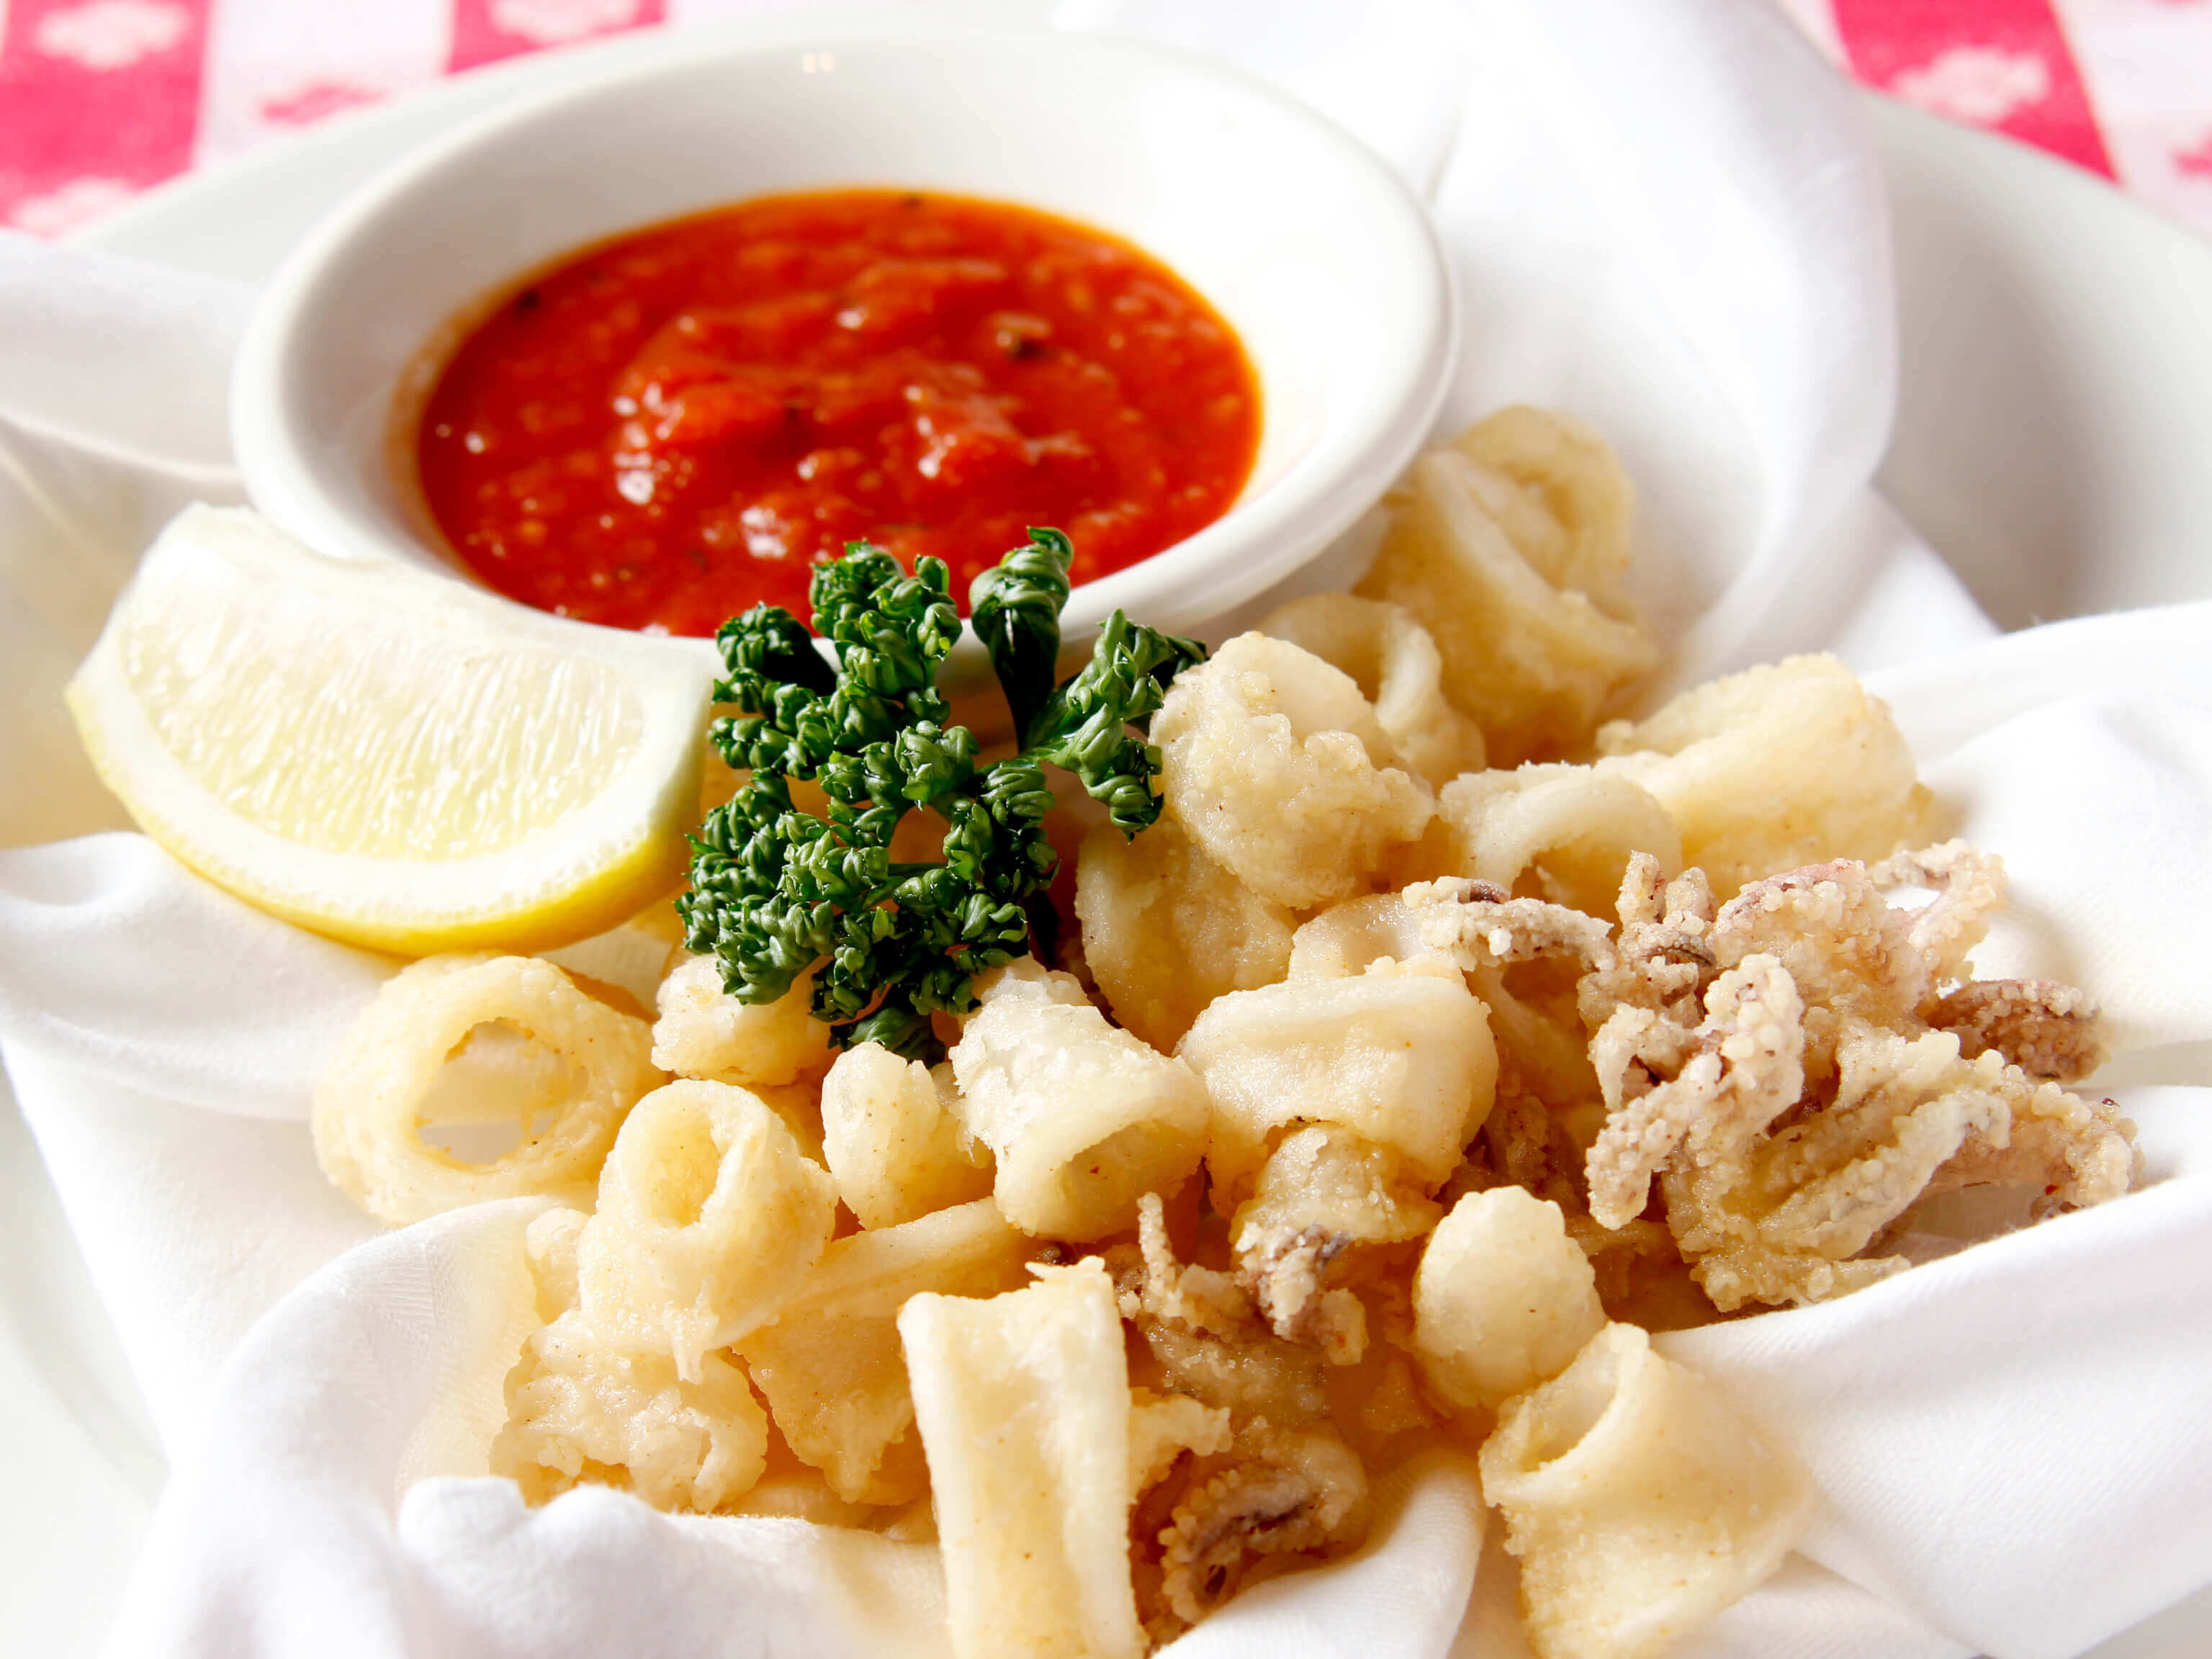 Fried Calamari with Marinara Sauce